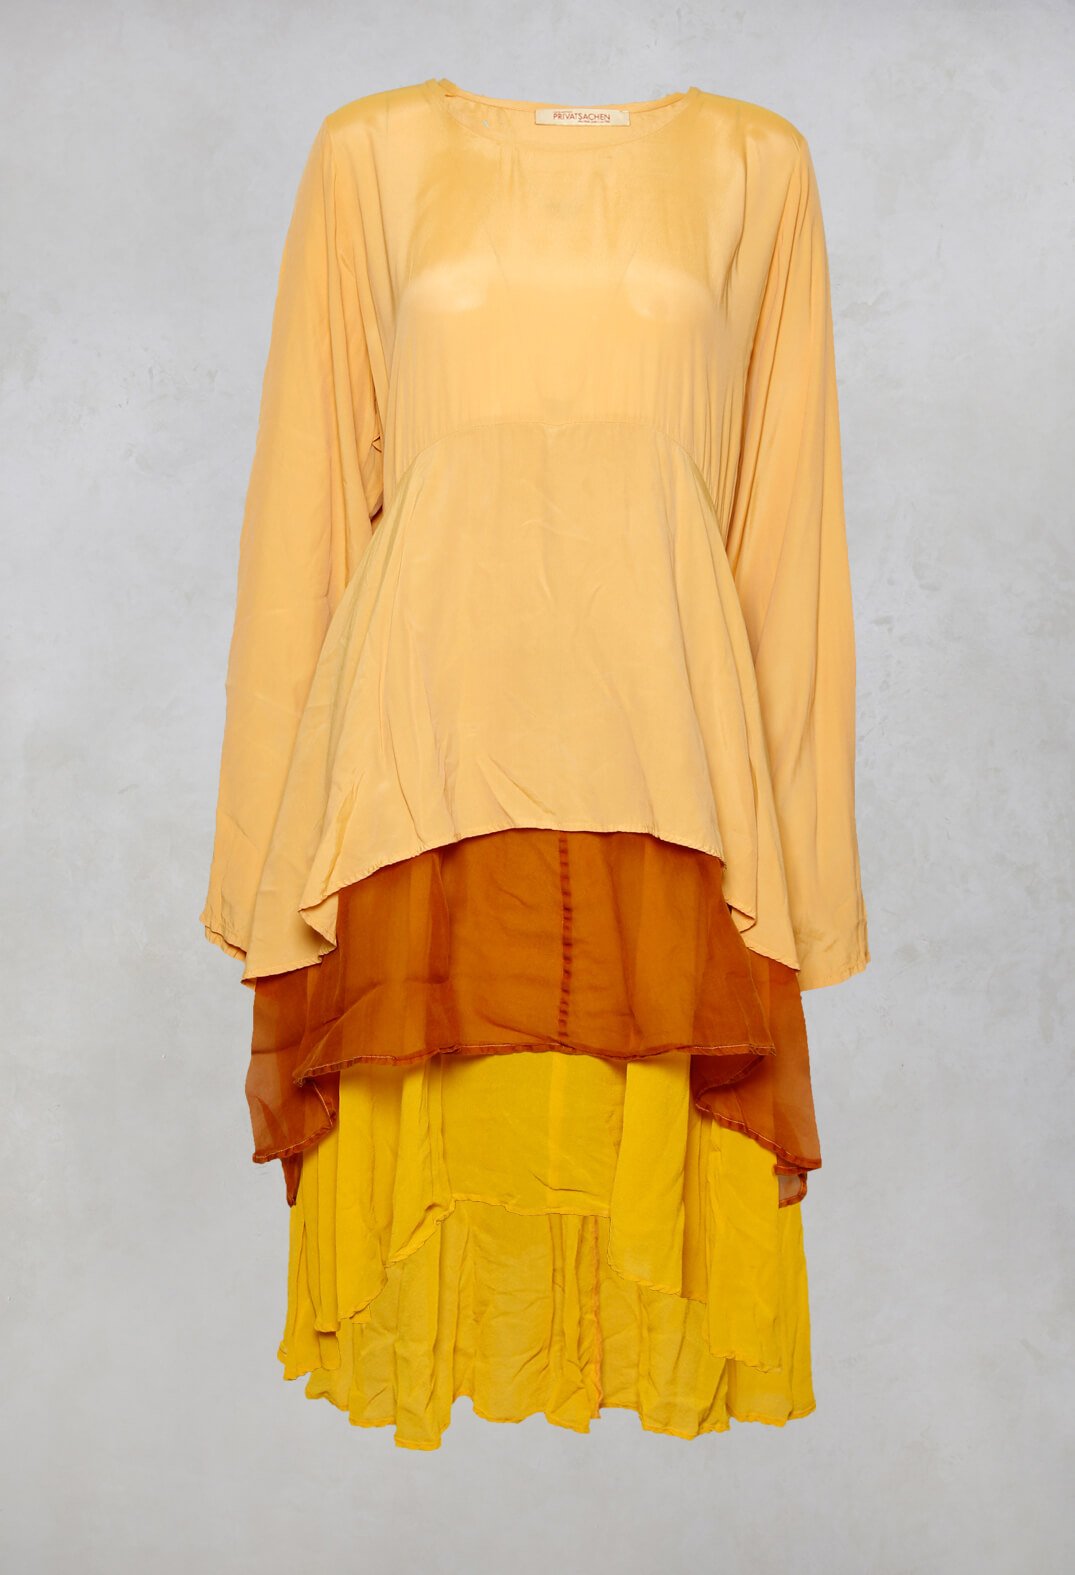 Kategoriese Layered Dress in Kerze Yellow